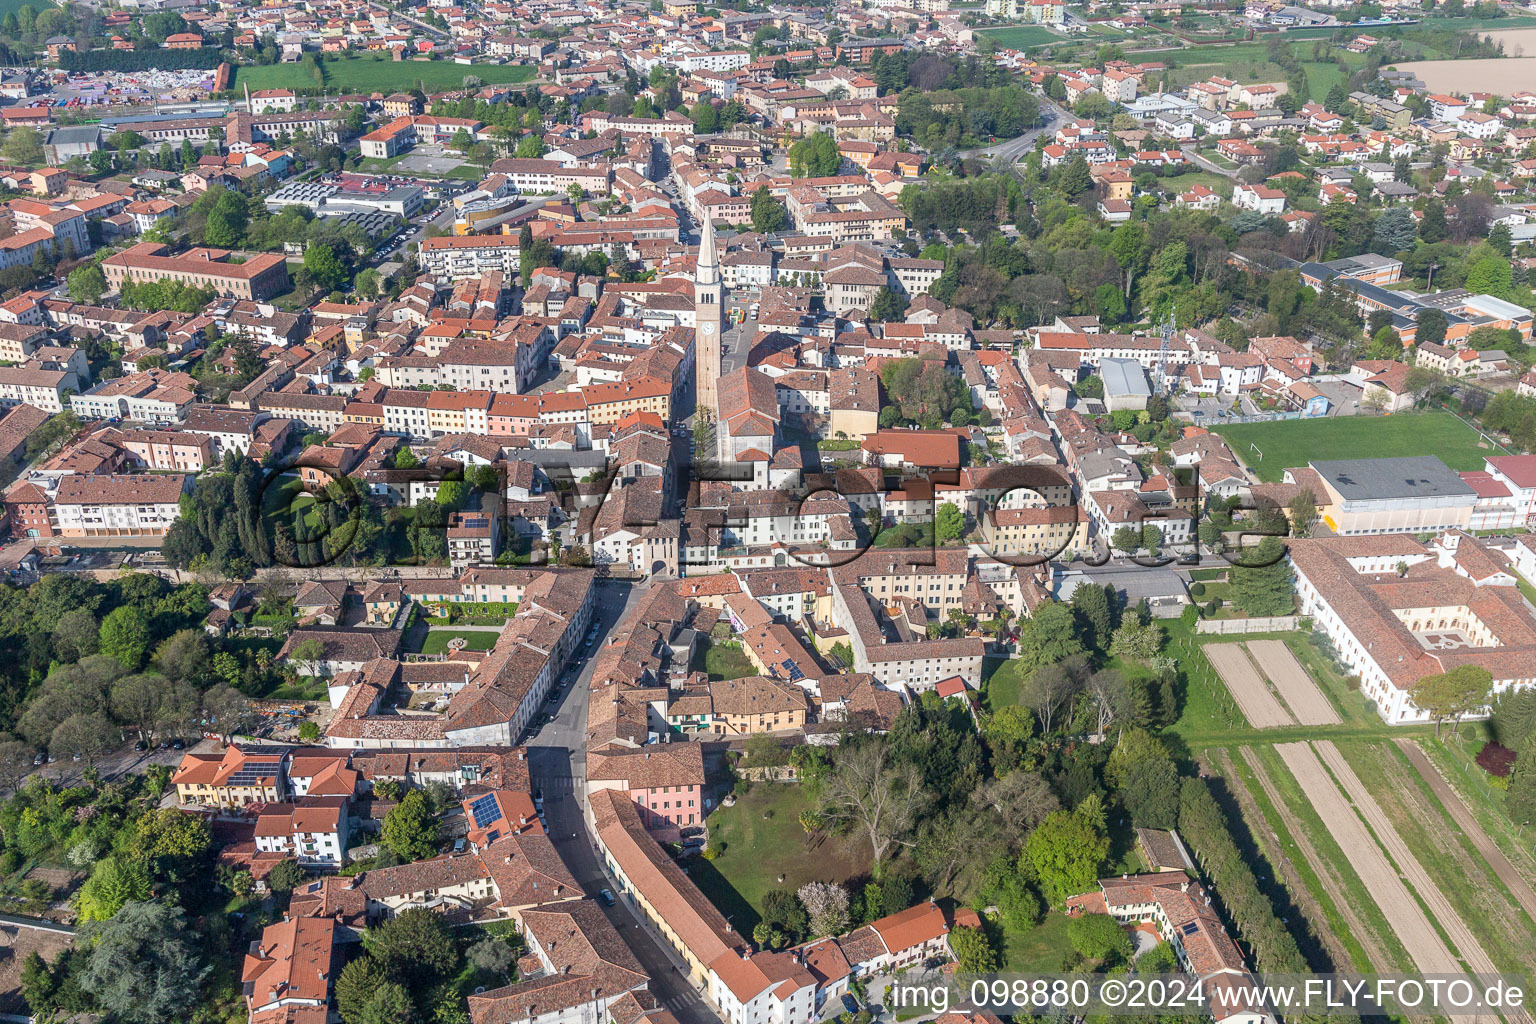 Luftbild von Ortsansicht der Straßen und Häuser der Wohngebiete in San Vito al Tagliamento in Friuli-Venezia Giulia im Bundesland Friaul-Julisch Venetien, Italien